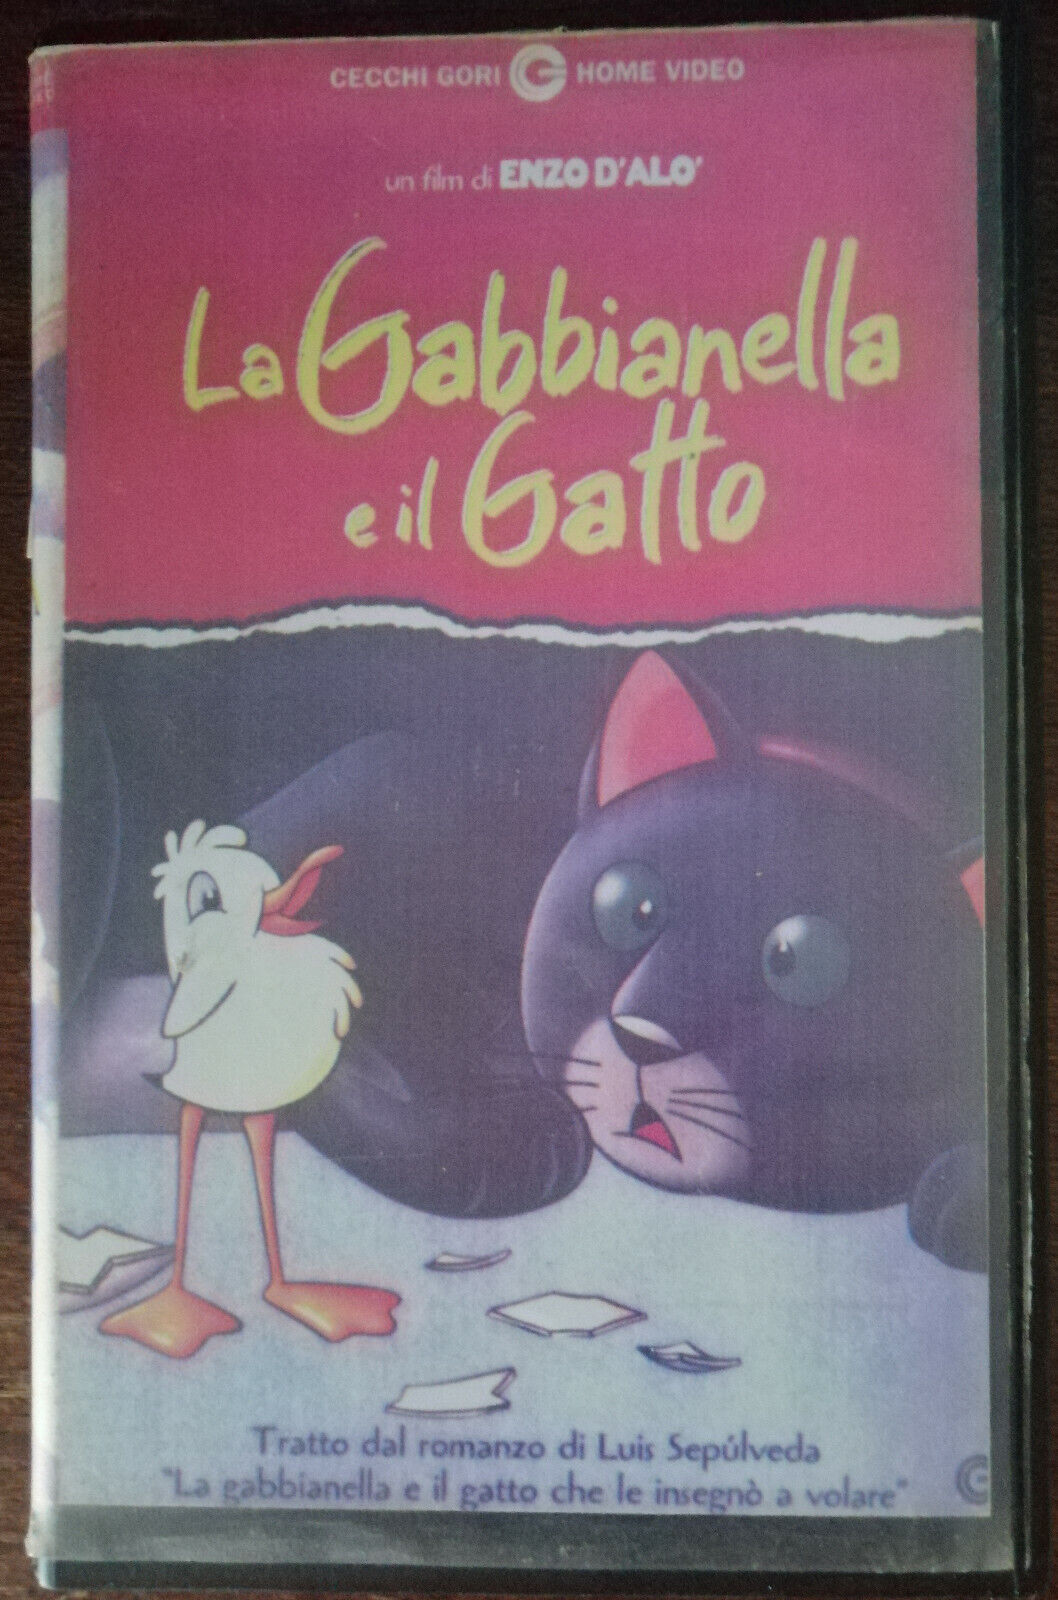 La Gabbianella e il Gatto - Cecchi Gori Home video,1999 - VHS - A vhs usato